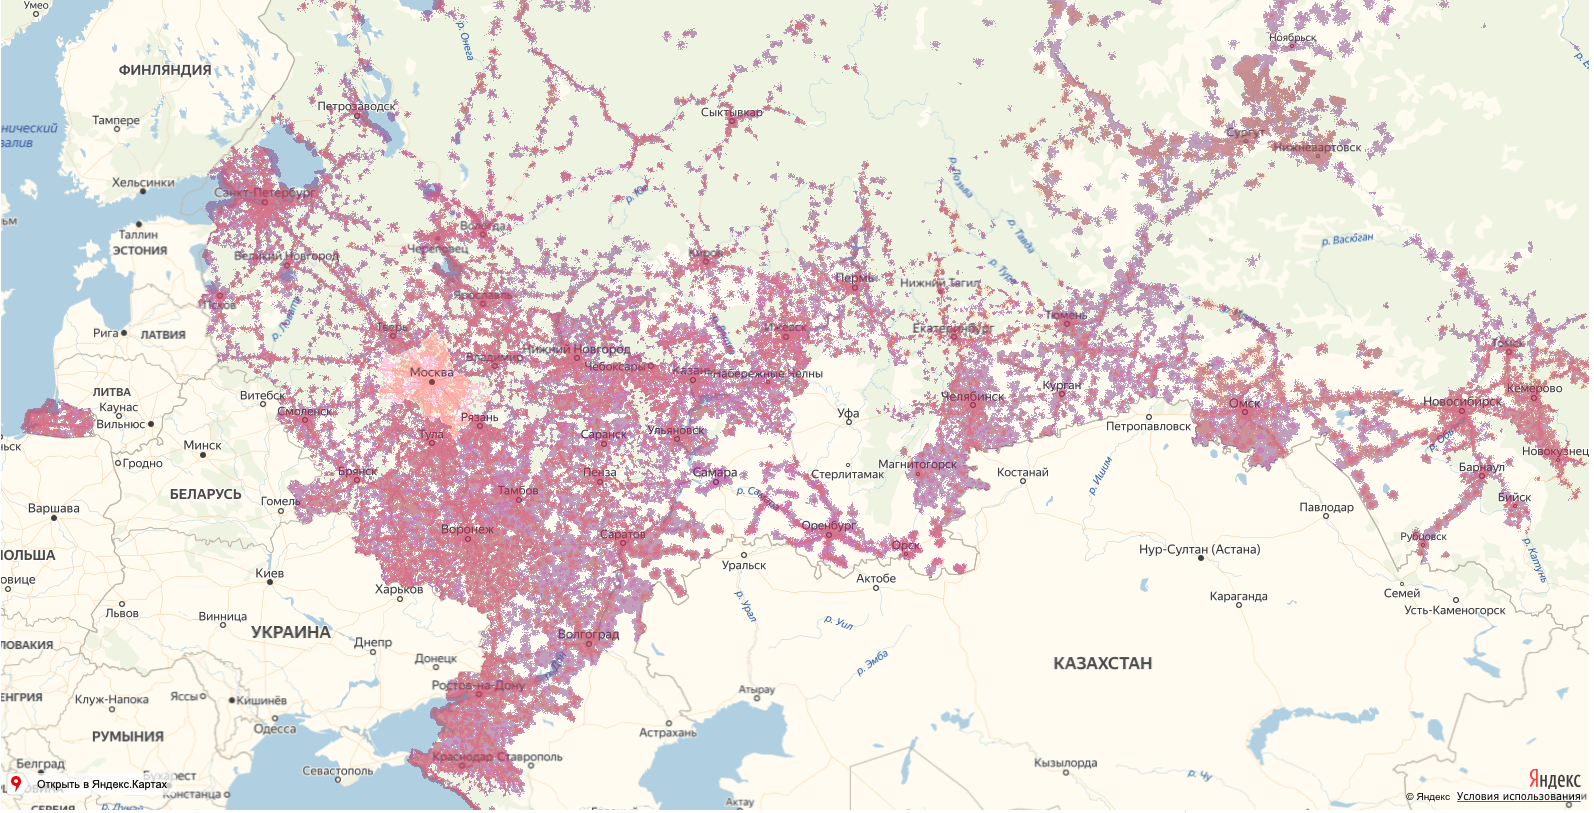 Теле2 - зона покрытия сигналов 2g, 3g, 4g, lte на карте россии